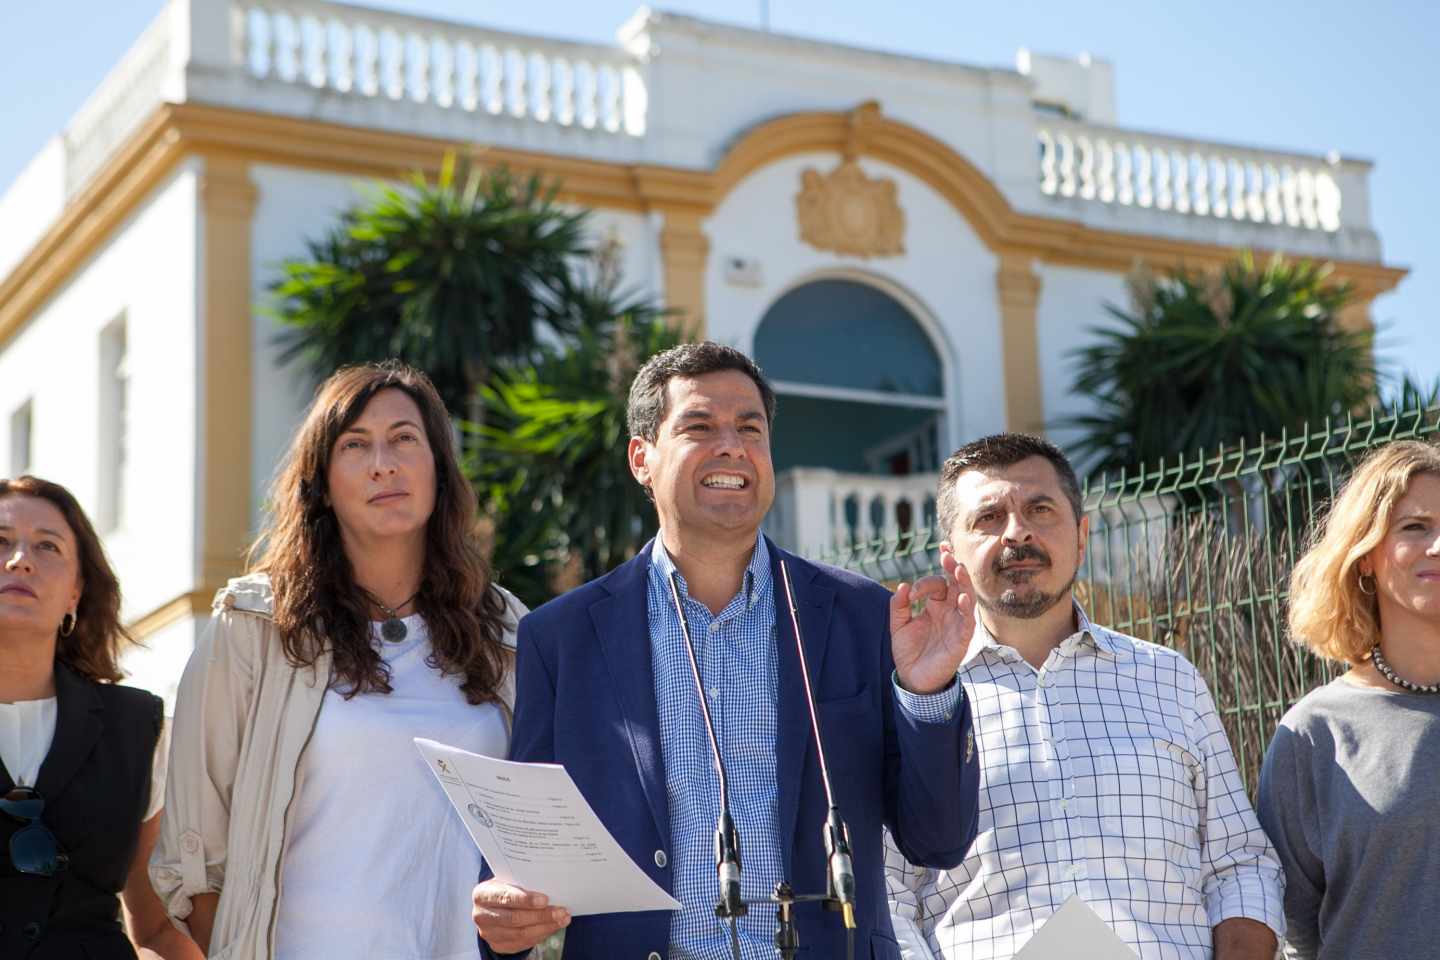 Tres tarjetas de una Fundación de la Junta de Andalucía pagaron 12 juergas en cinco puticlubs